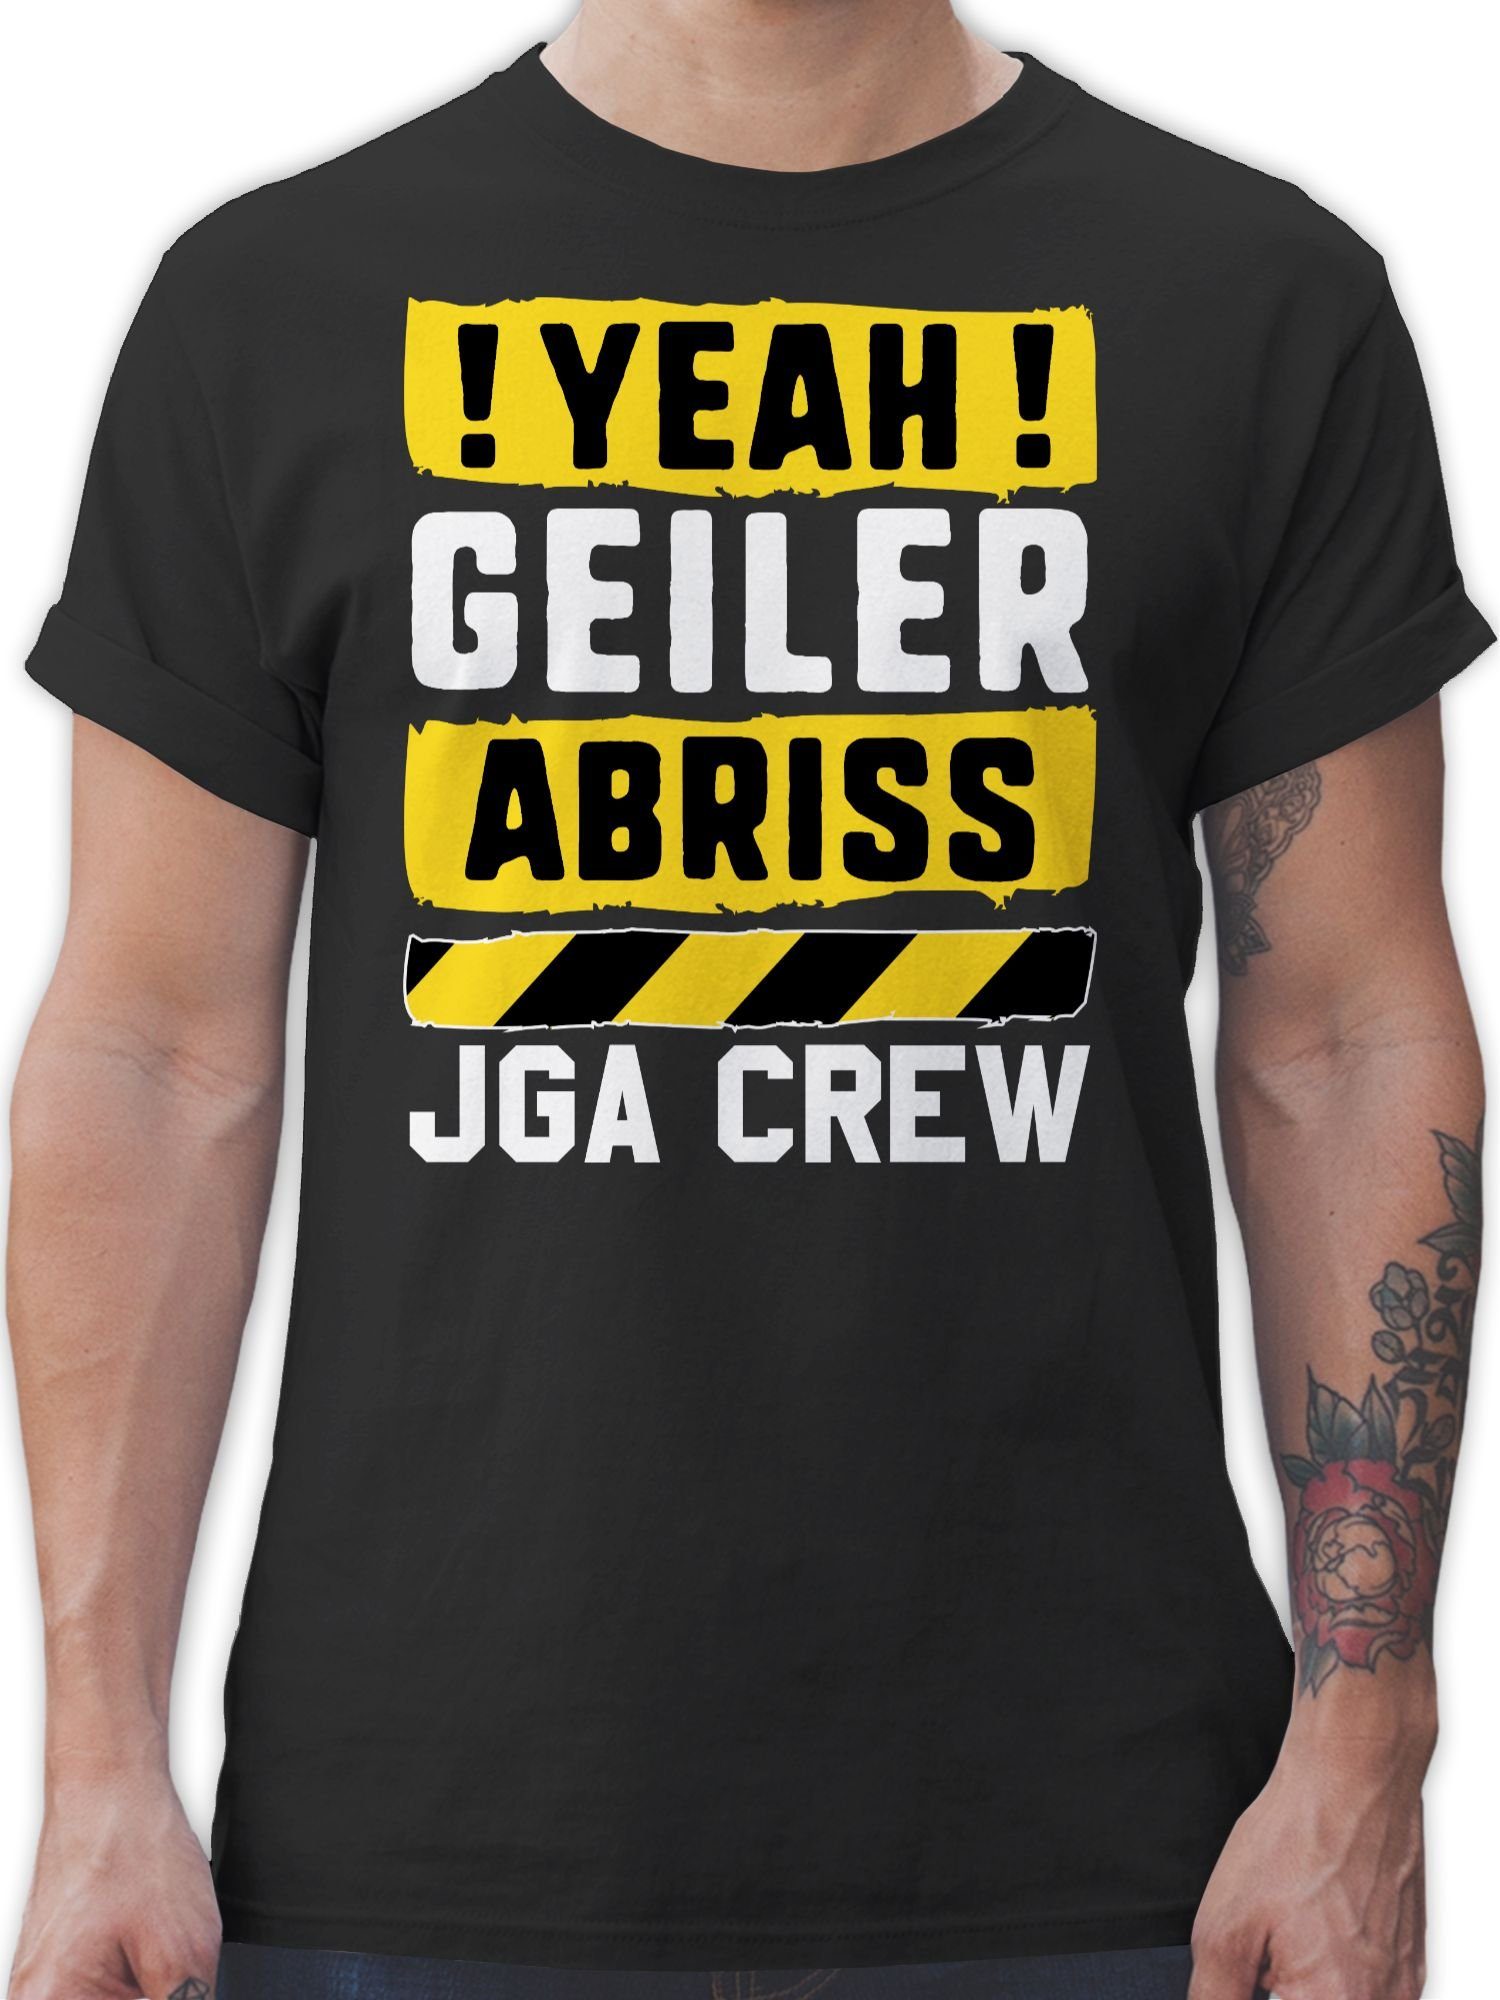 Schwarz gelb Abriss 01 Crew JGA geiler weiß Shirtracer - Yeah Männer JGA T-Shirt